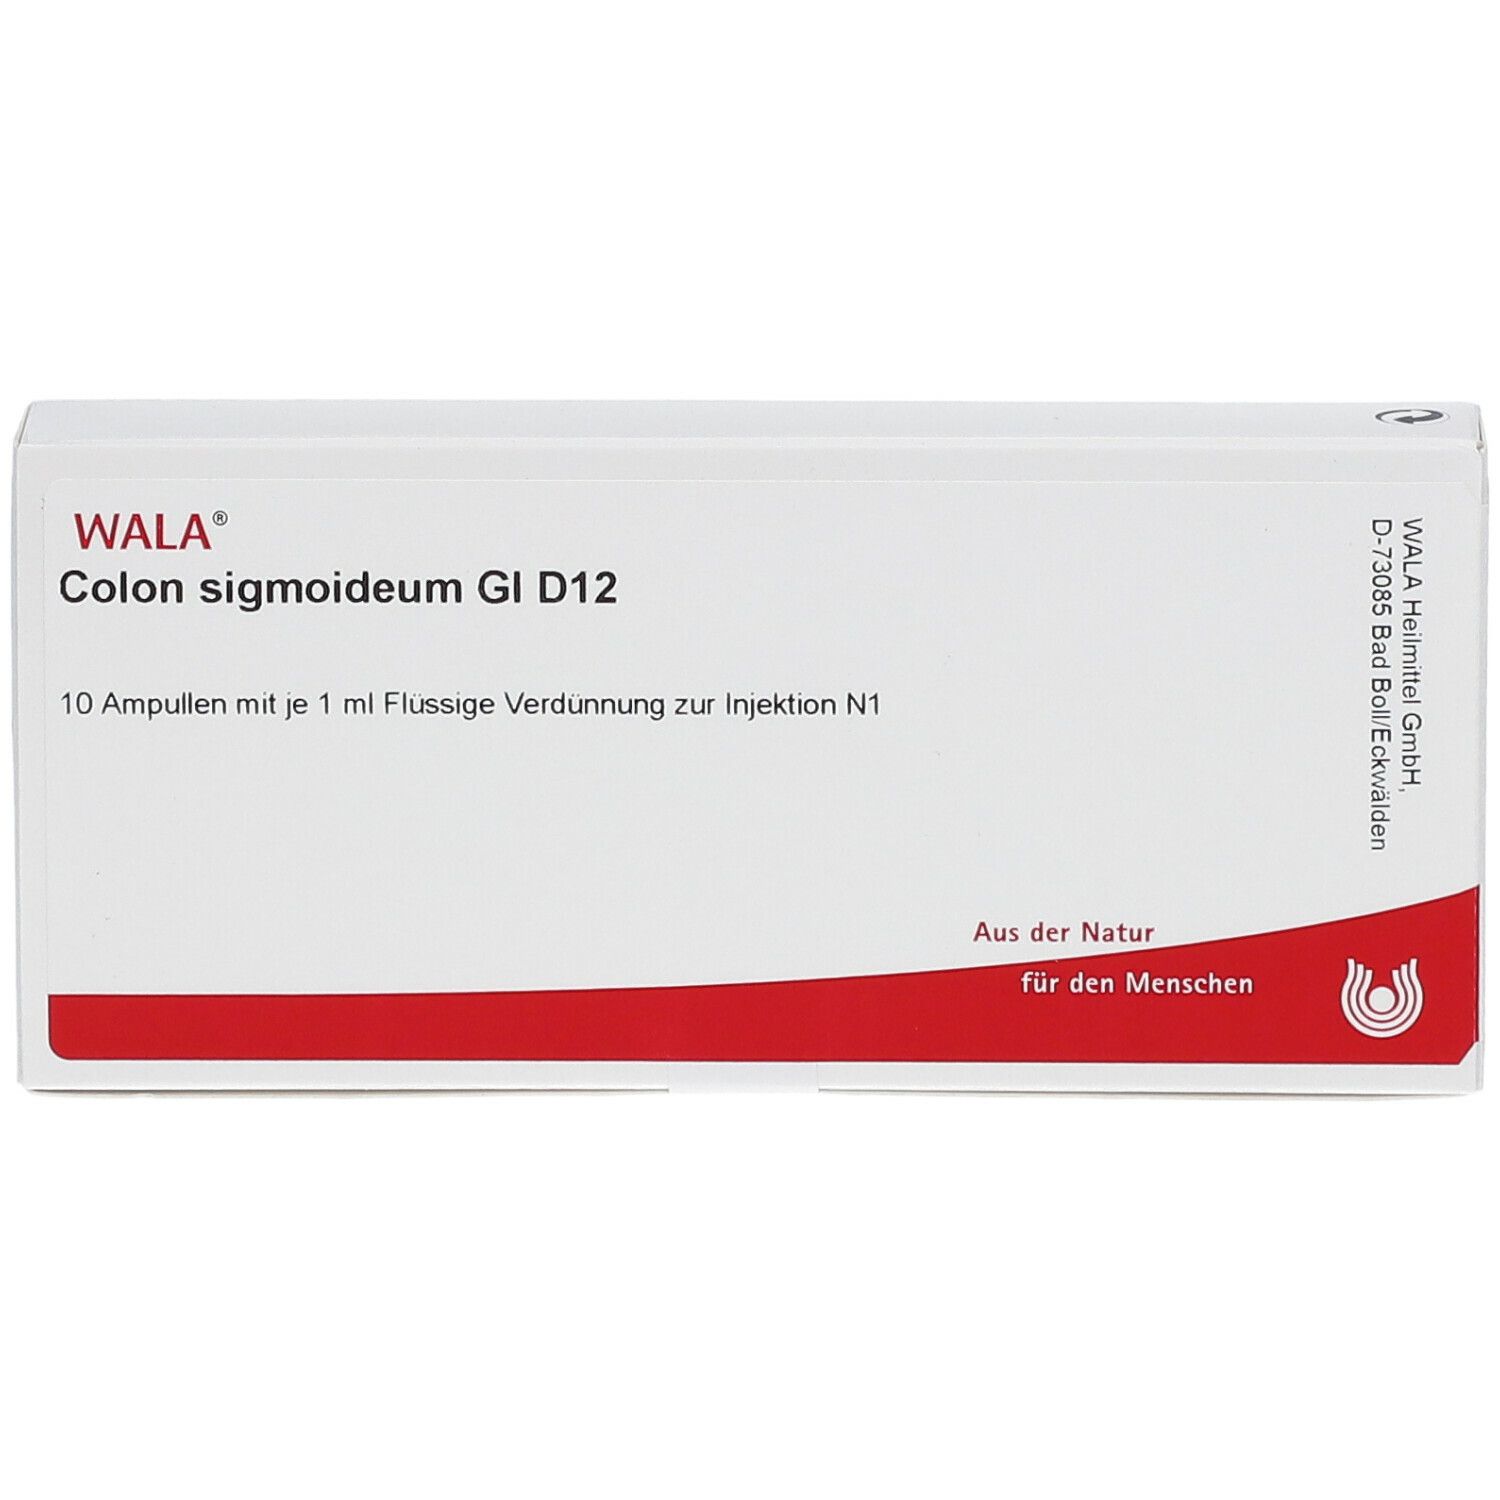 WALA® Colon sigmoideum Gl D 12